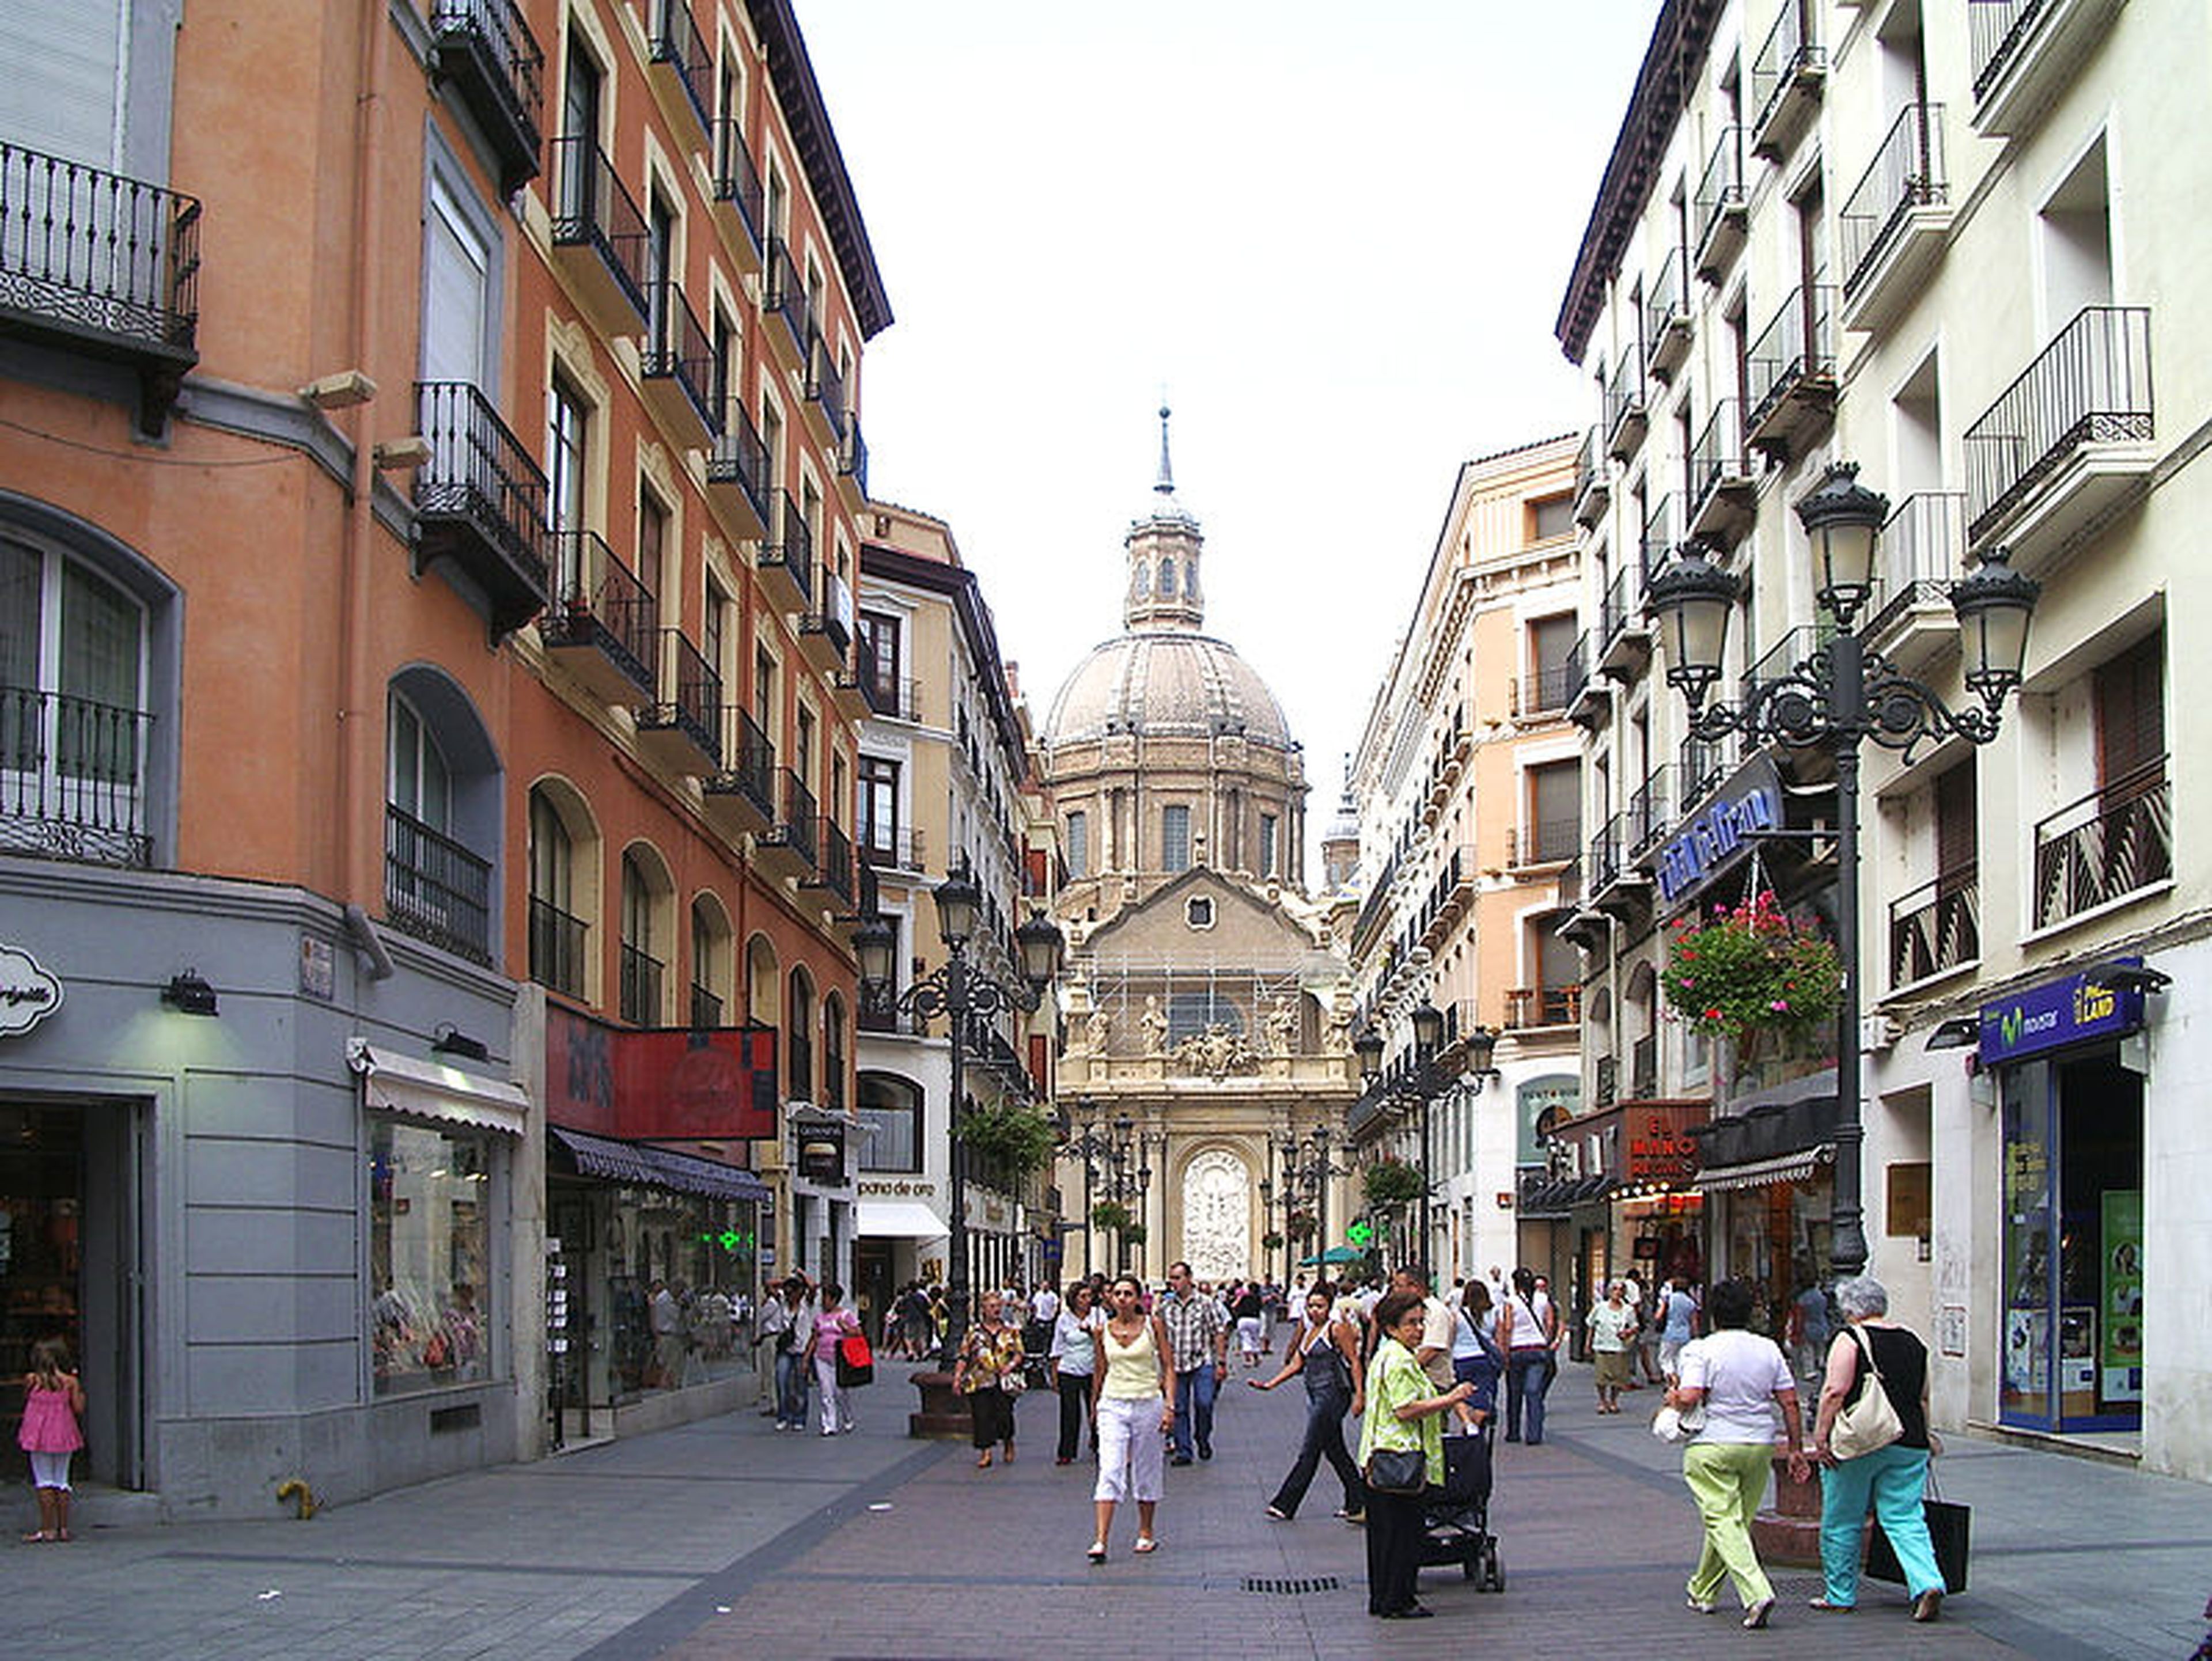 Calle Alfonso I, Zaragoza.